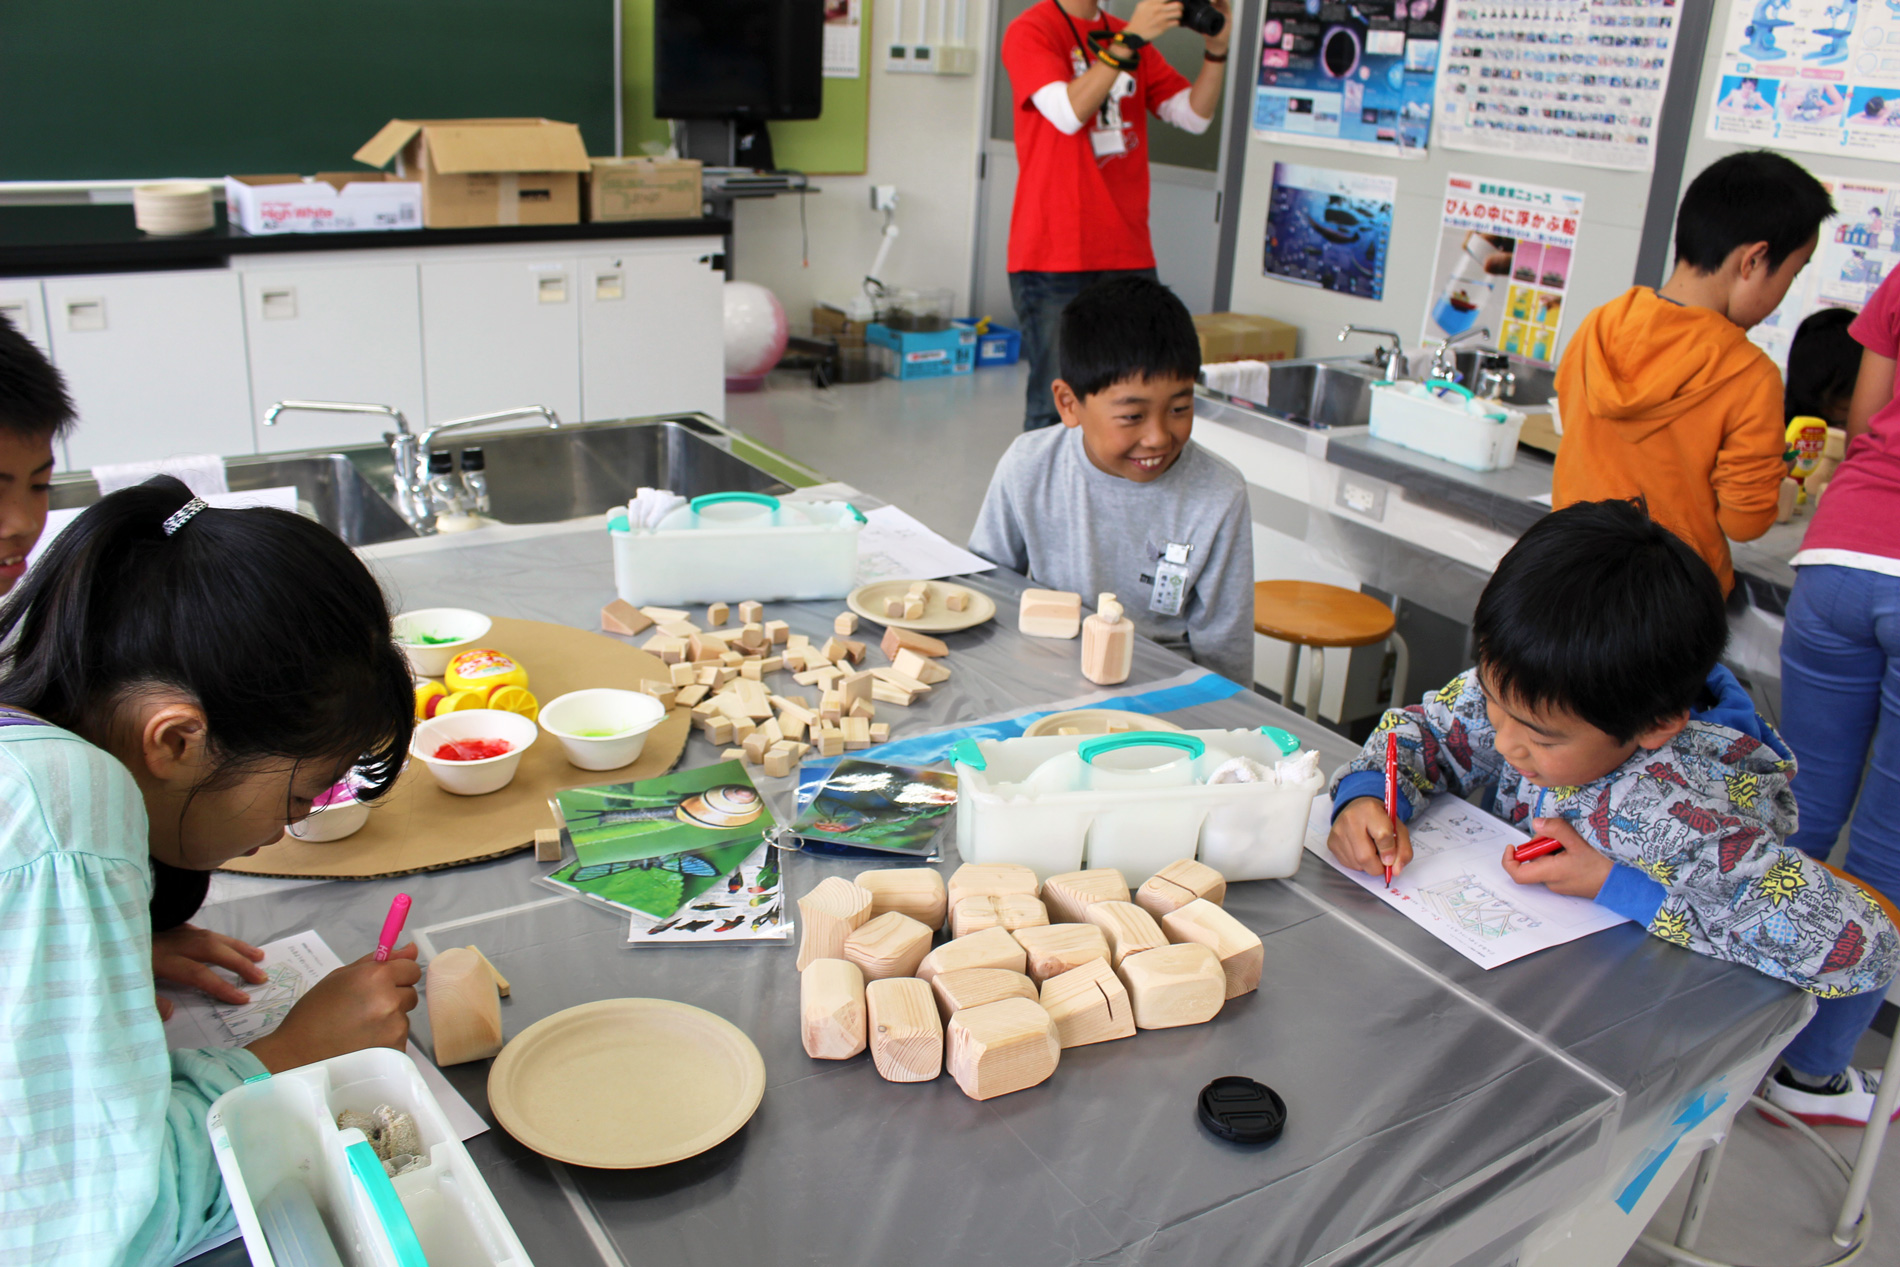 東洋大学理工学部建築学科のゼミ活動において東日本大震災で被害を受けた宮城県の小学校で建築のワークショップを実施